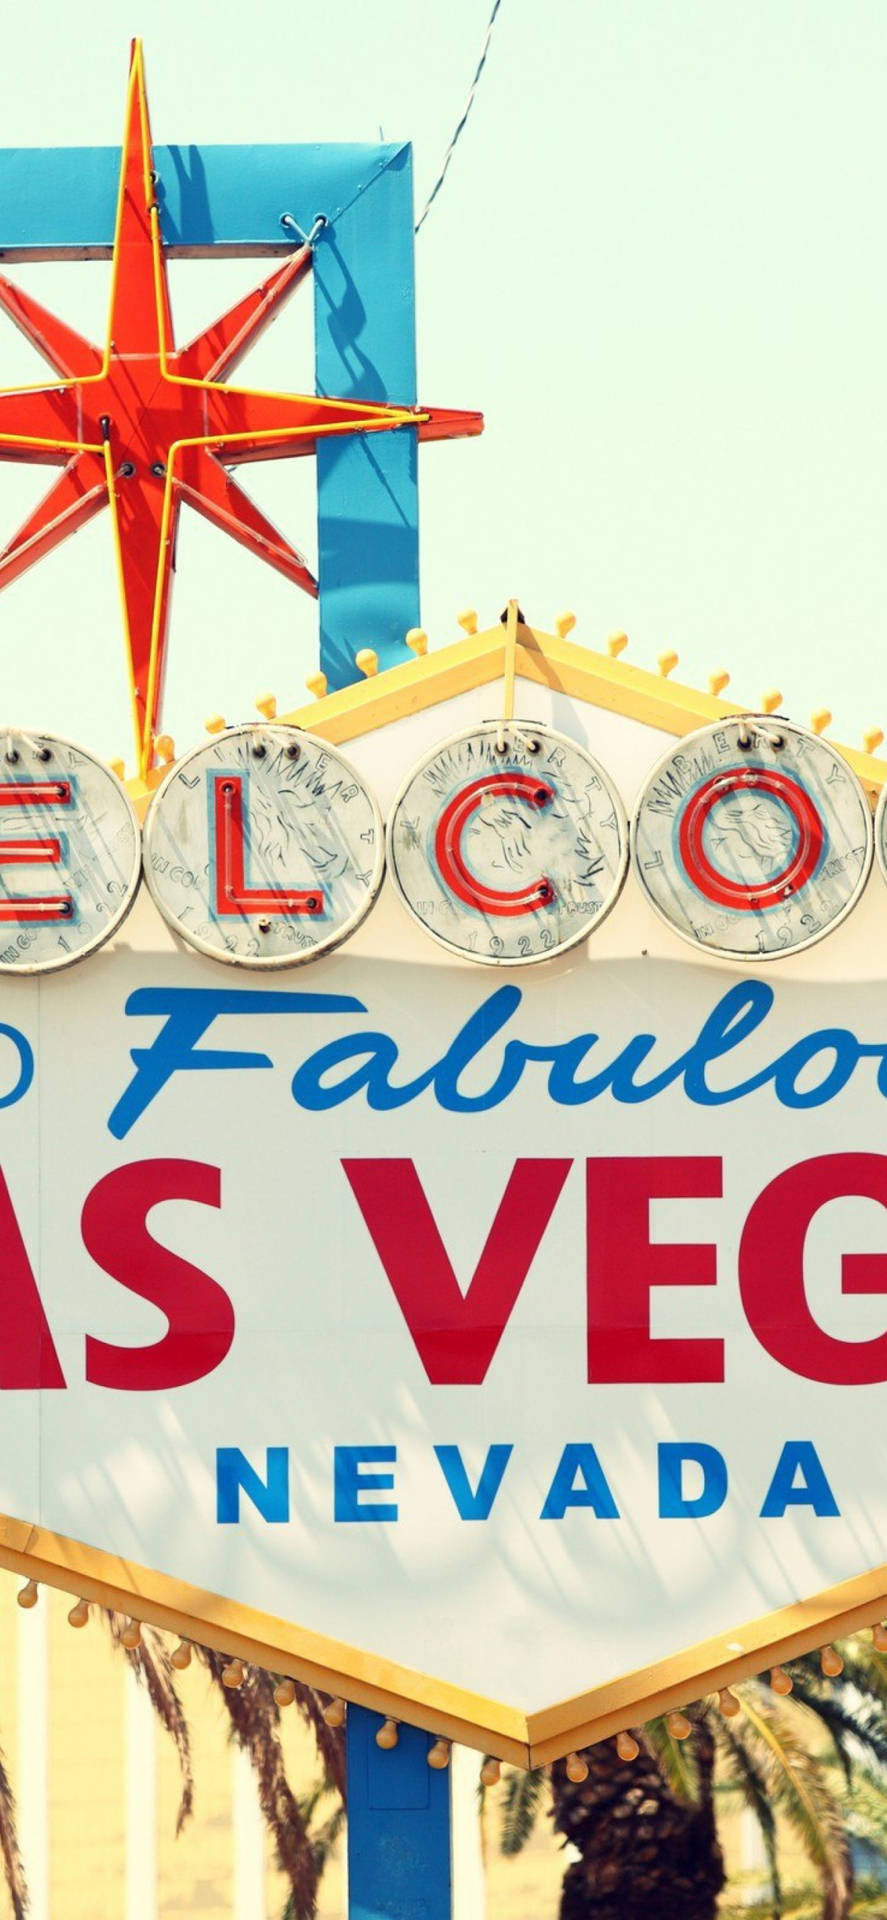 Välkommentill Vegas Iphone Wallpaper